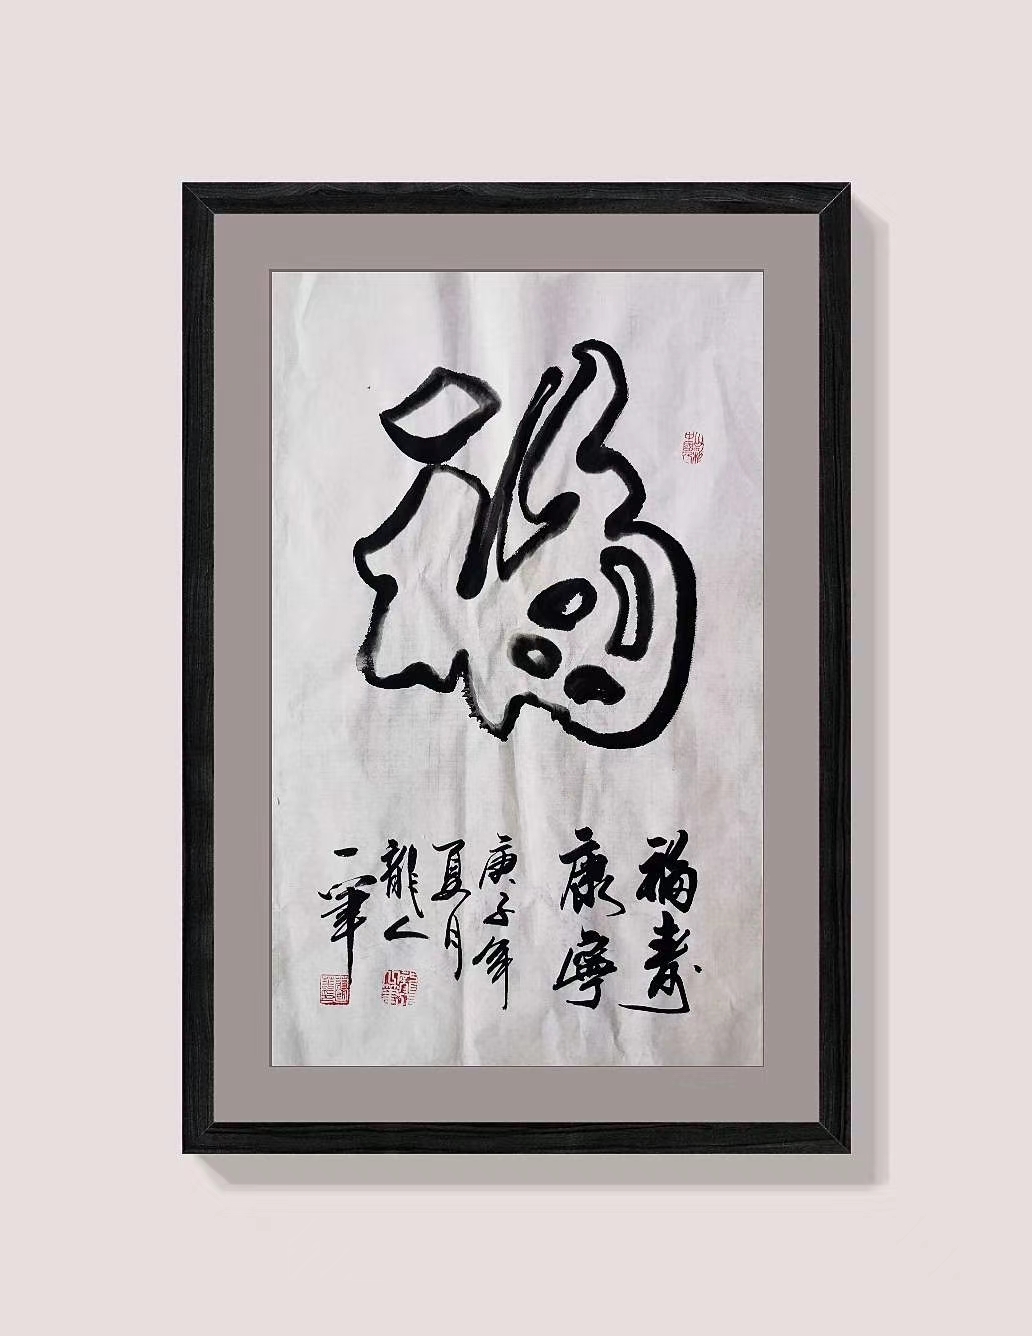 中国大众文化学会名人书画艺术发展委员会——蒋国华